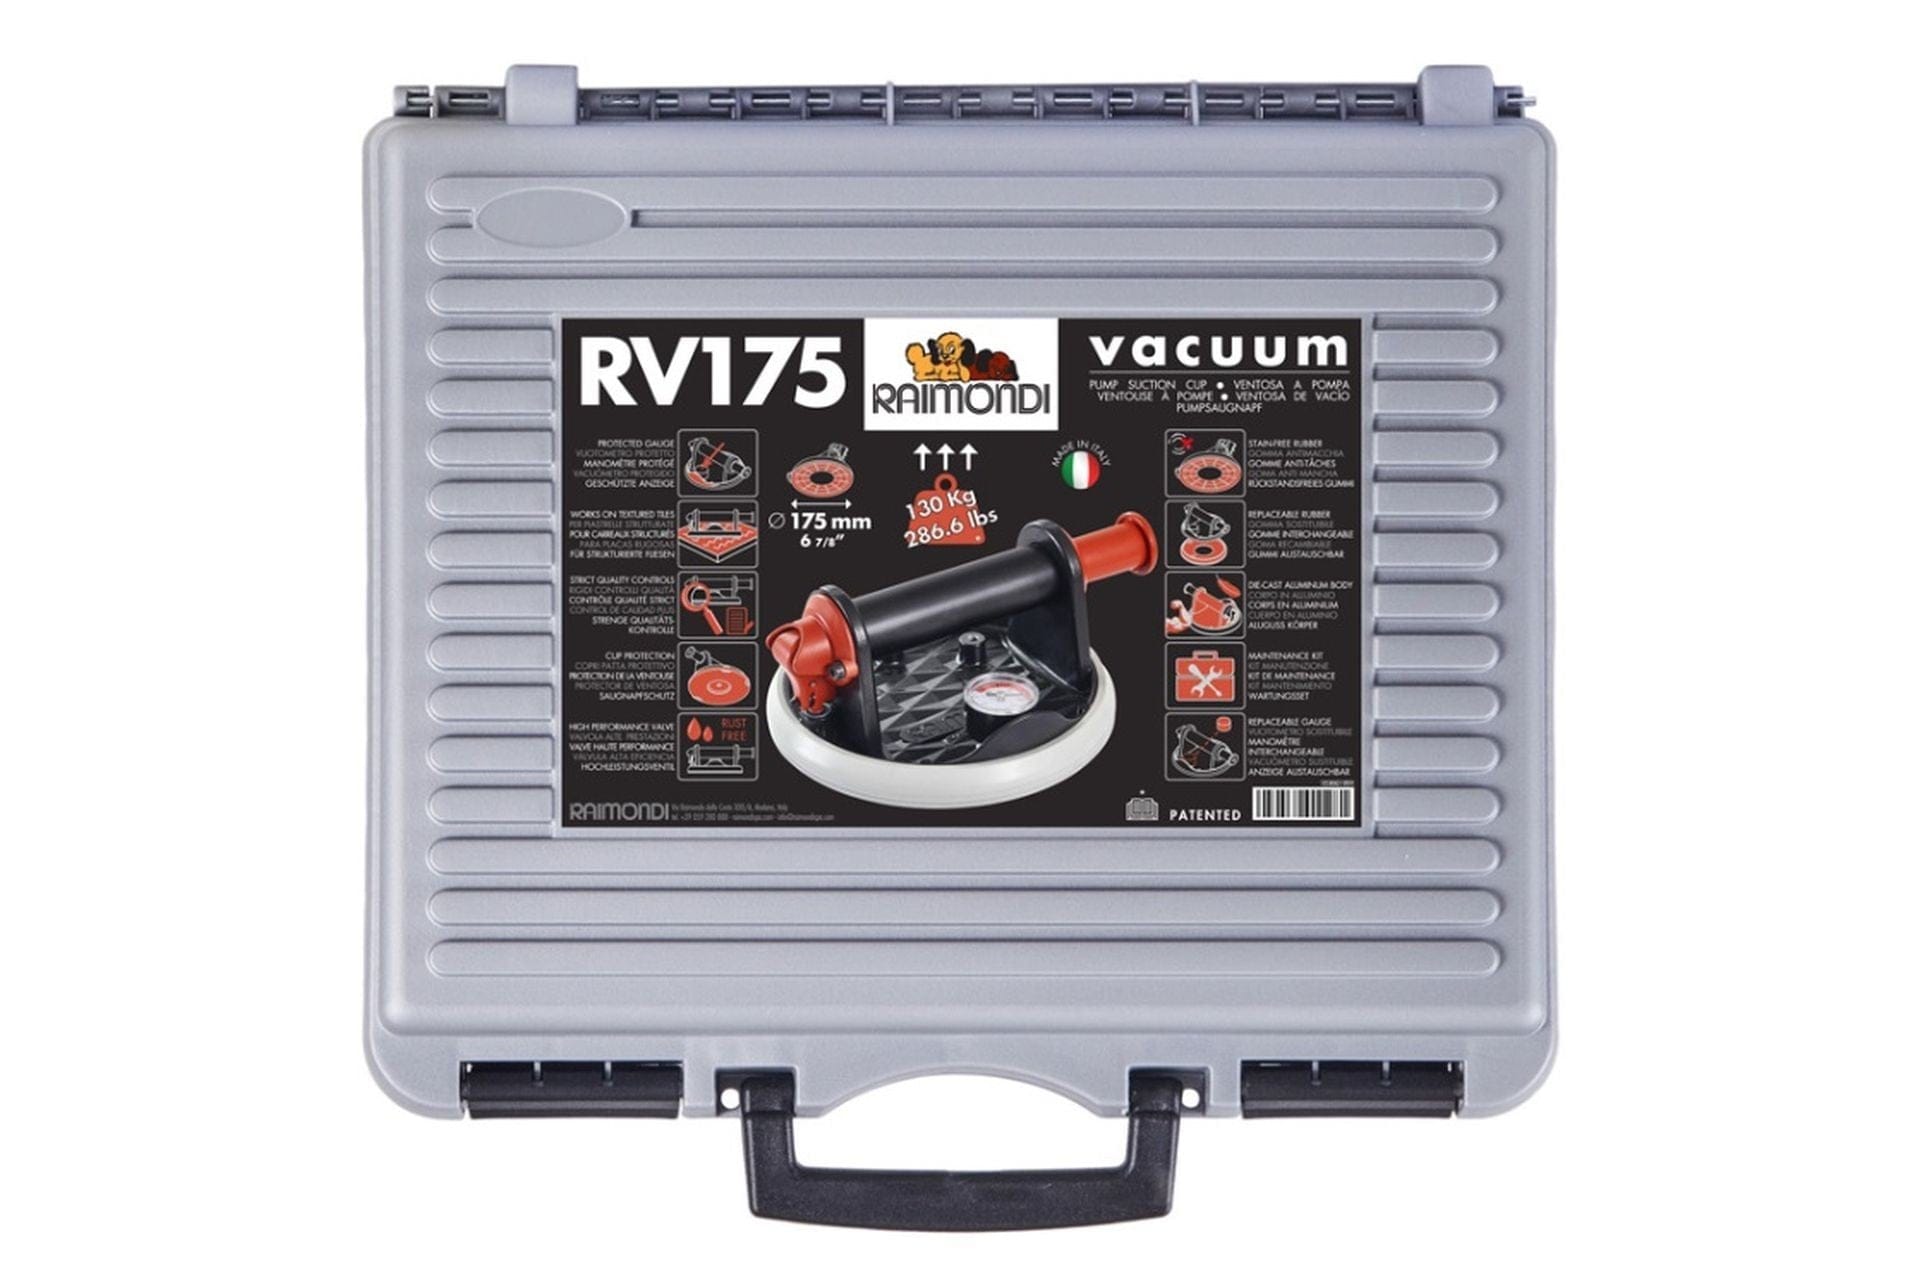 Ventuza cu vacuum si manometru RV175 Raimondi